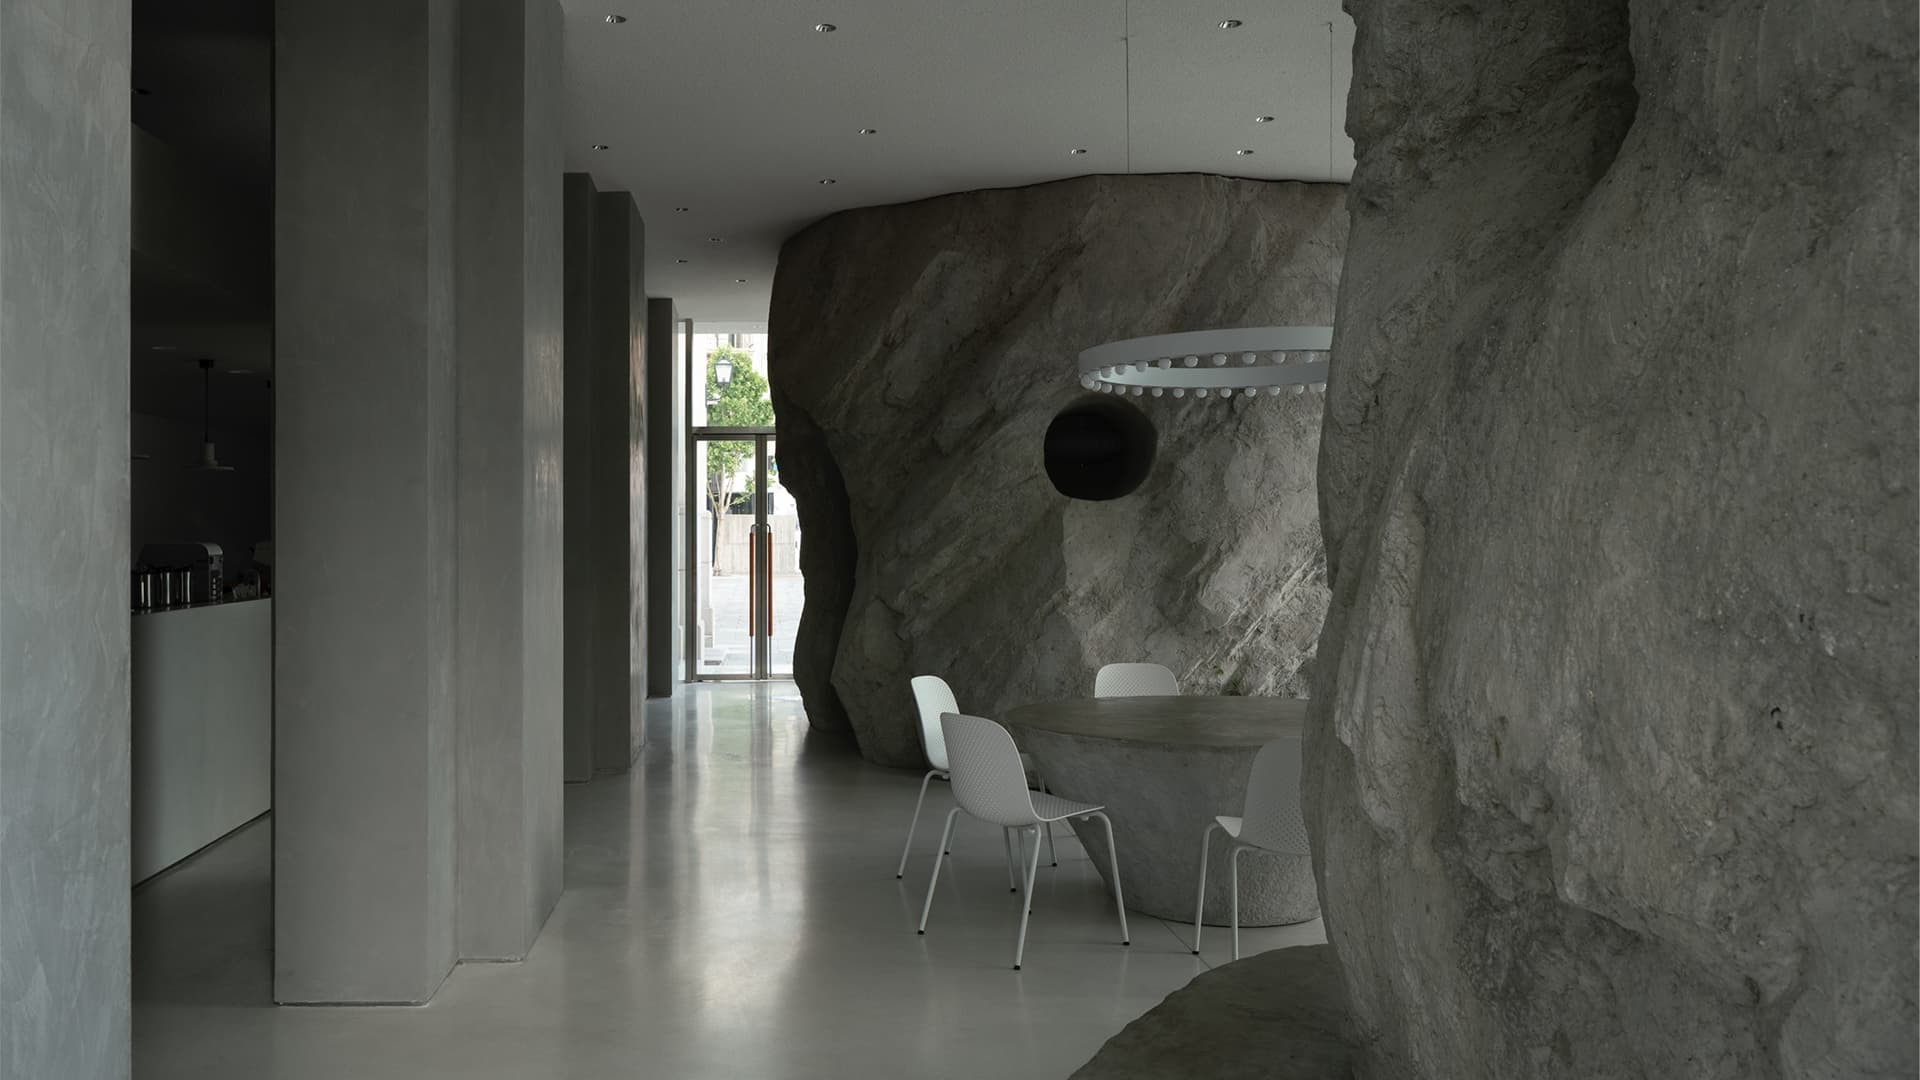 Магнетизм каменных валунов в интерьере кондитерской – проект B.L.U.E Architecture studio